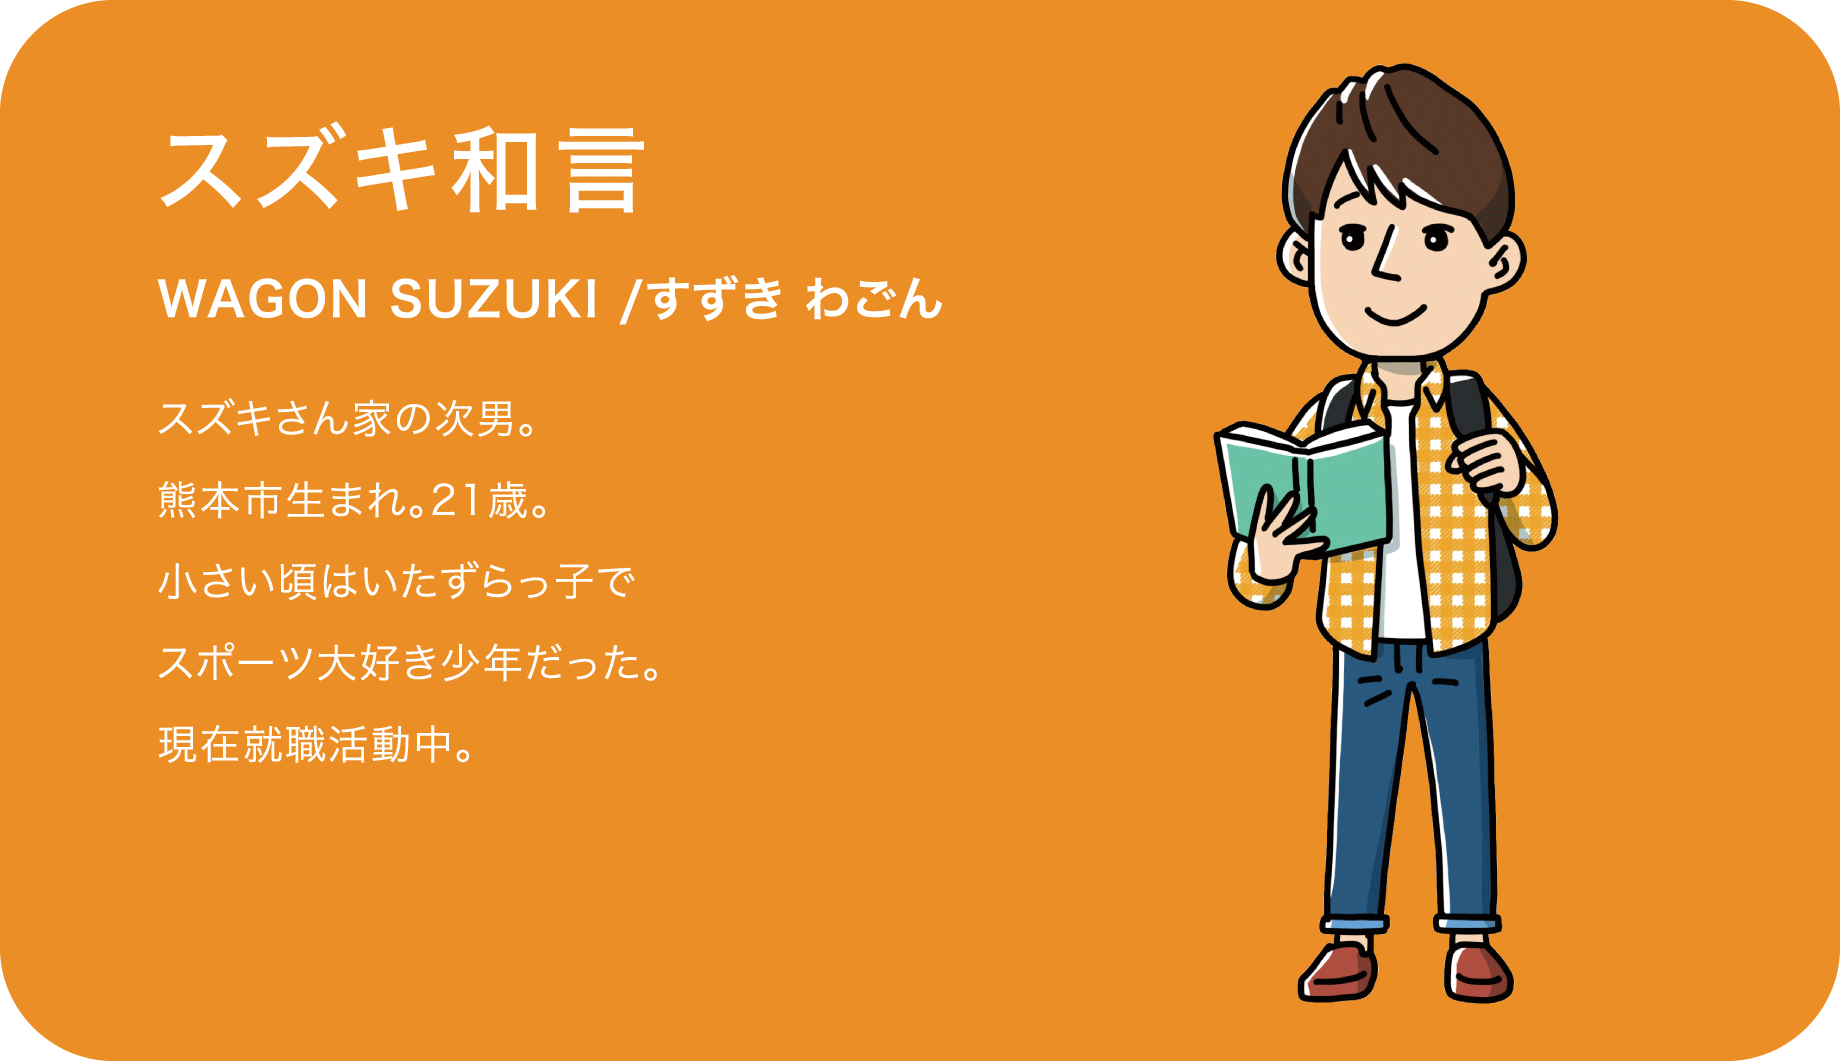 スズキ和言（WAGON SUZUKI /すずき わごん）スズキさん家の次男。熊本市生まれ。21歳。小さい頃はいたずらっ子でスポーツ大好き少年だった。現在就職活動中。